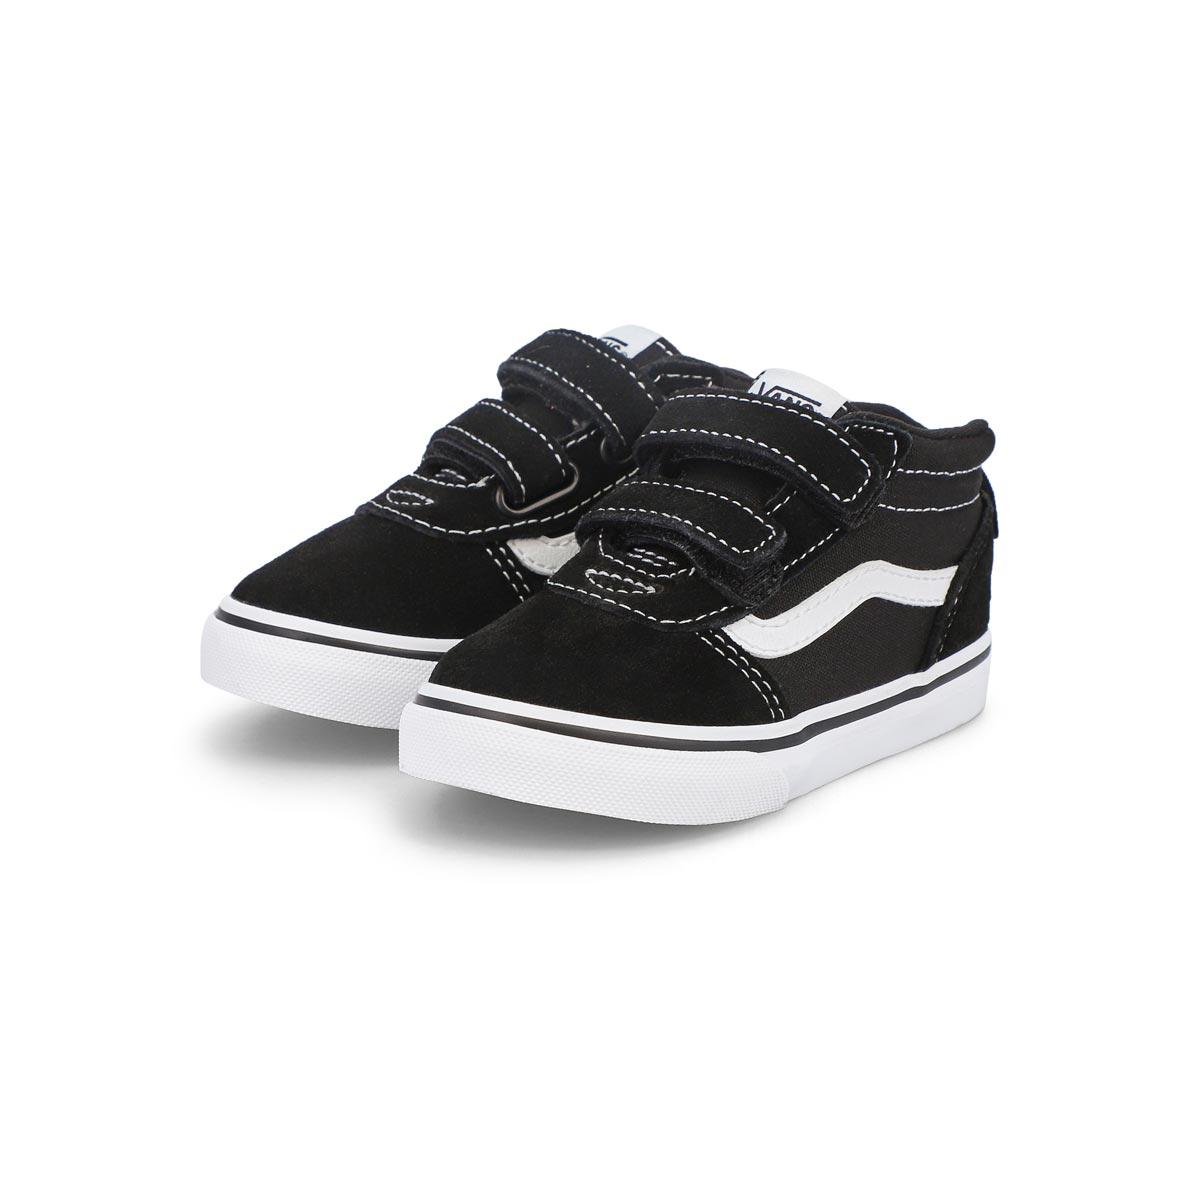 Infants' Ward Mid V Sneakers - Black/Black